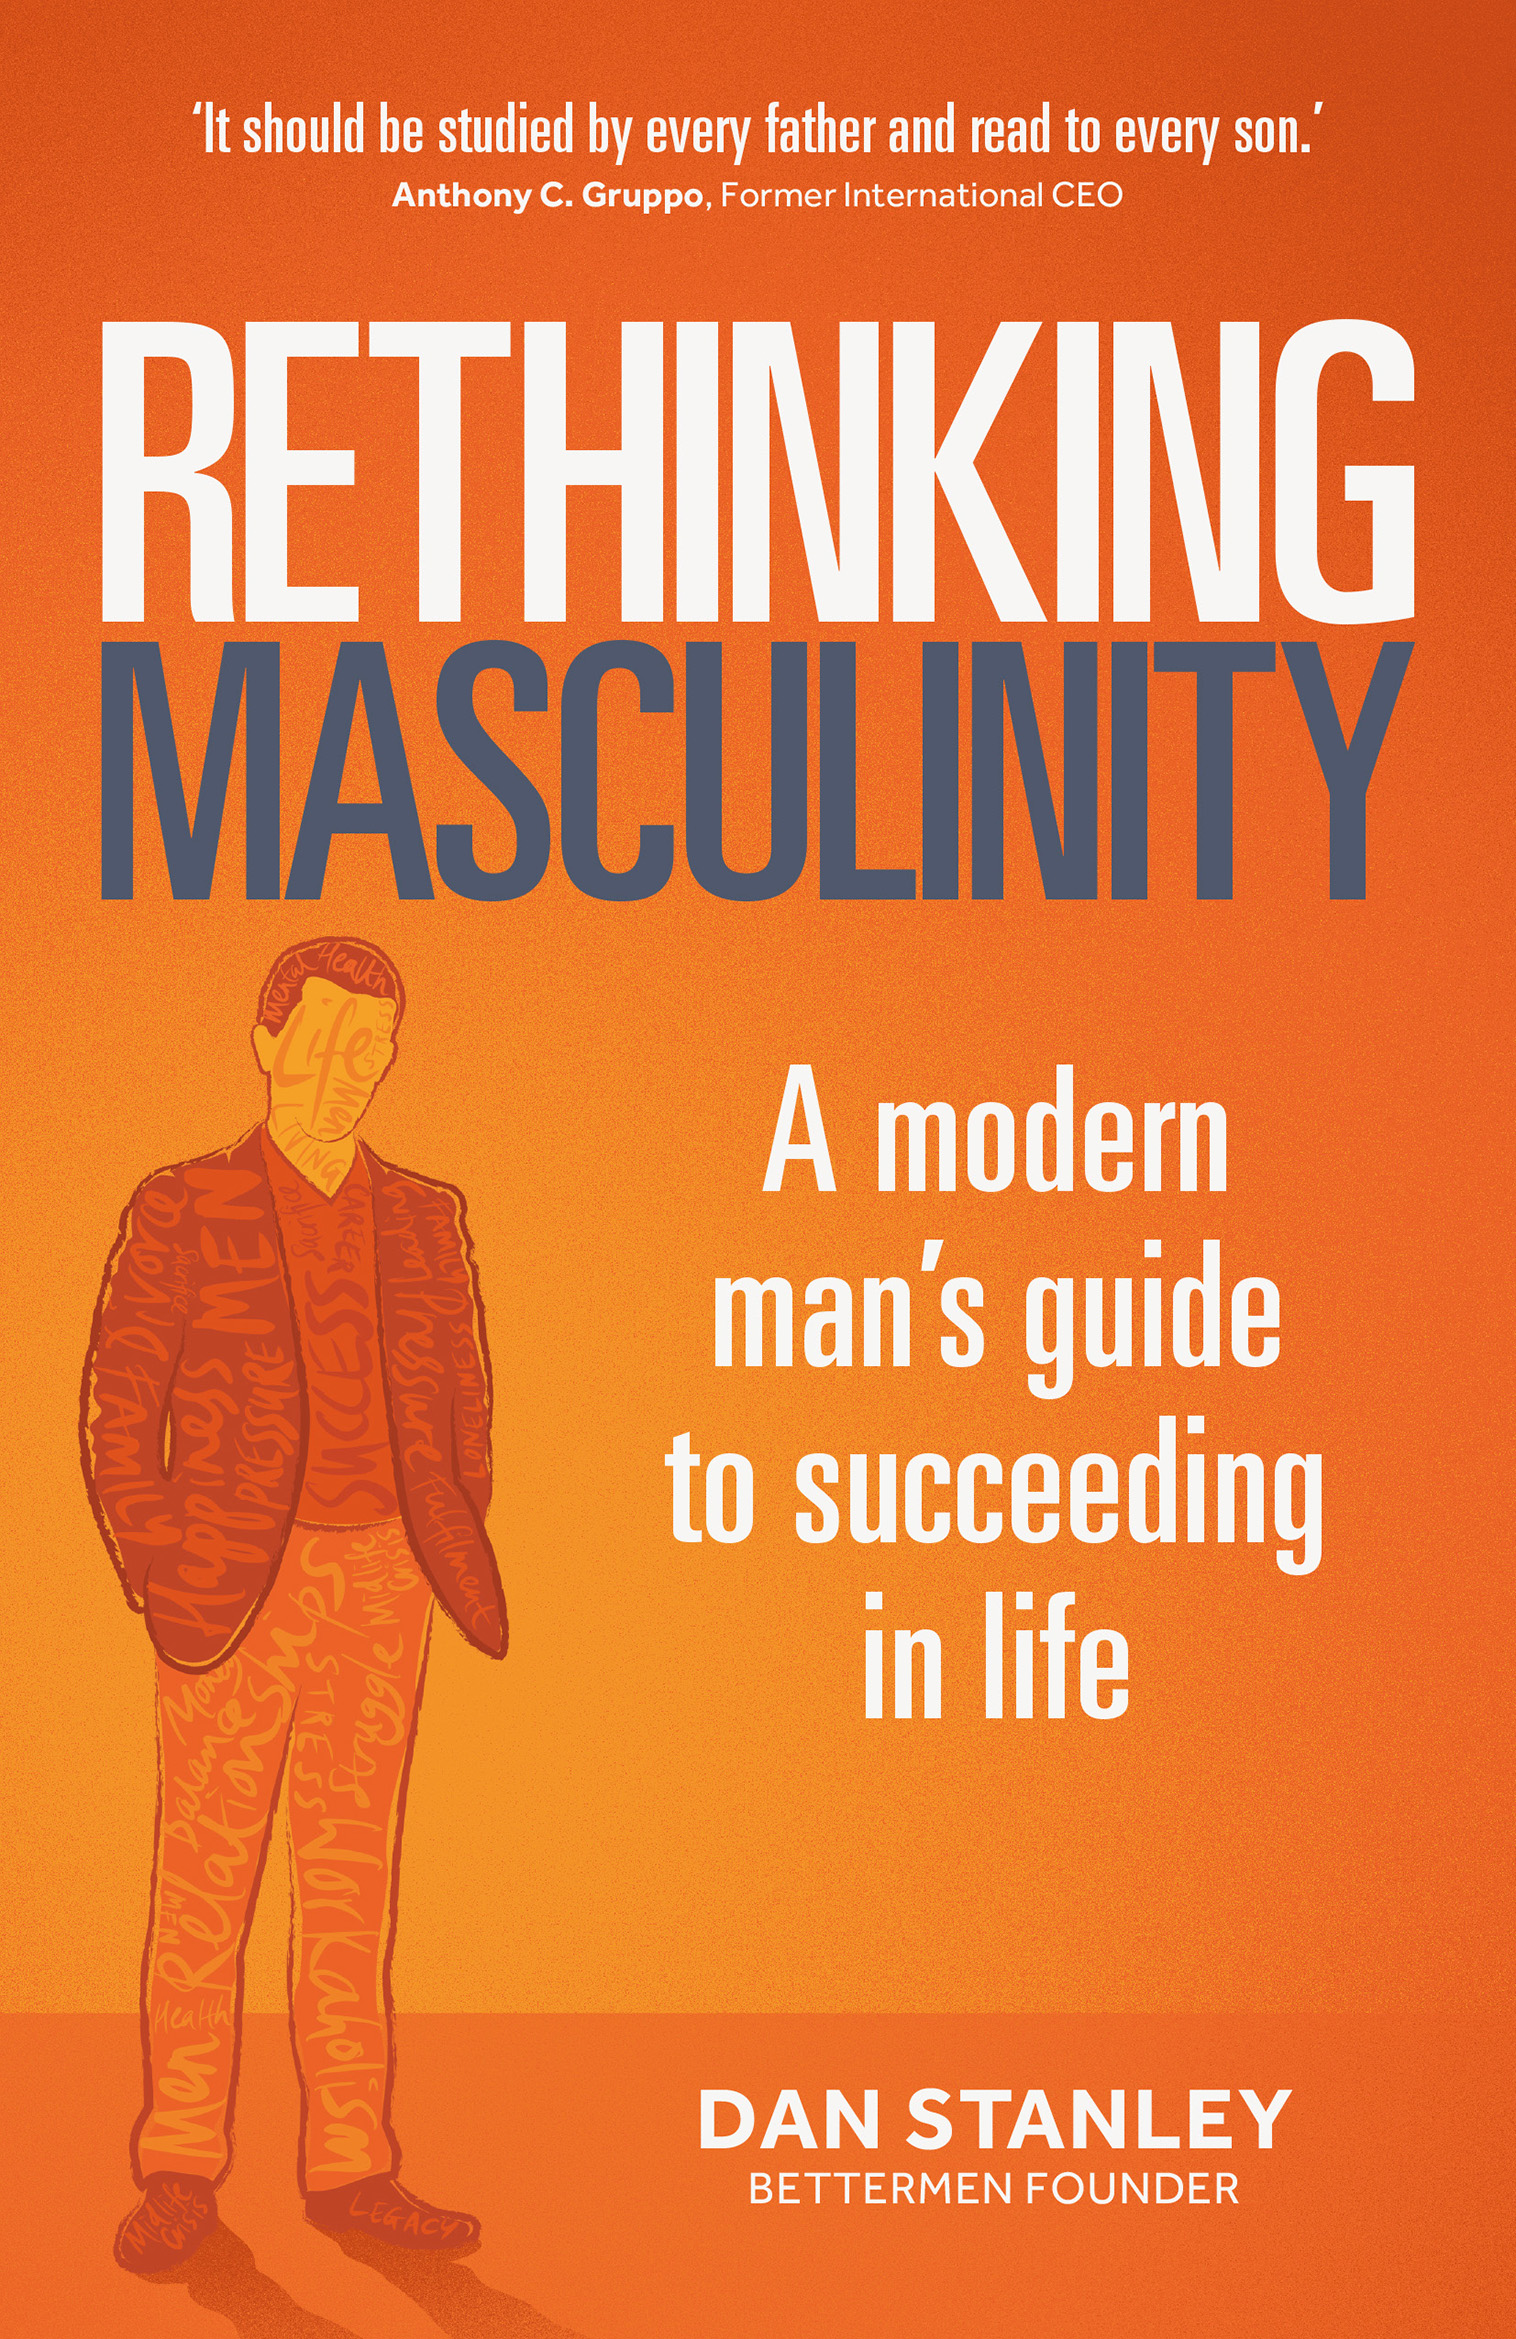 Rethinking Masculinity